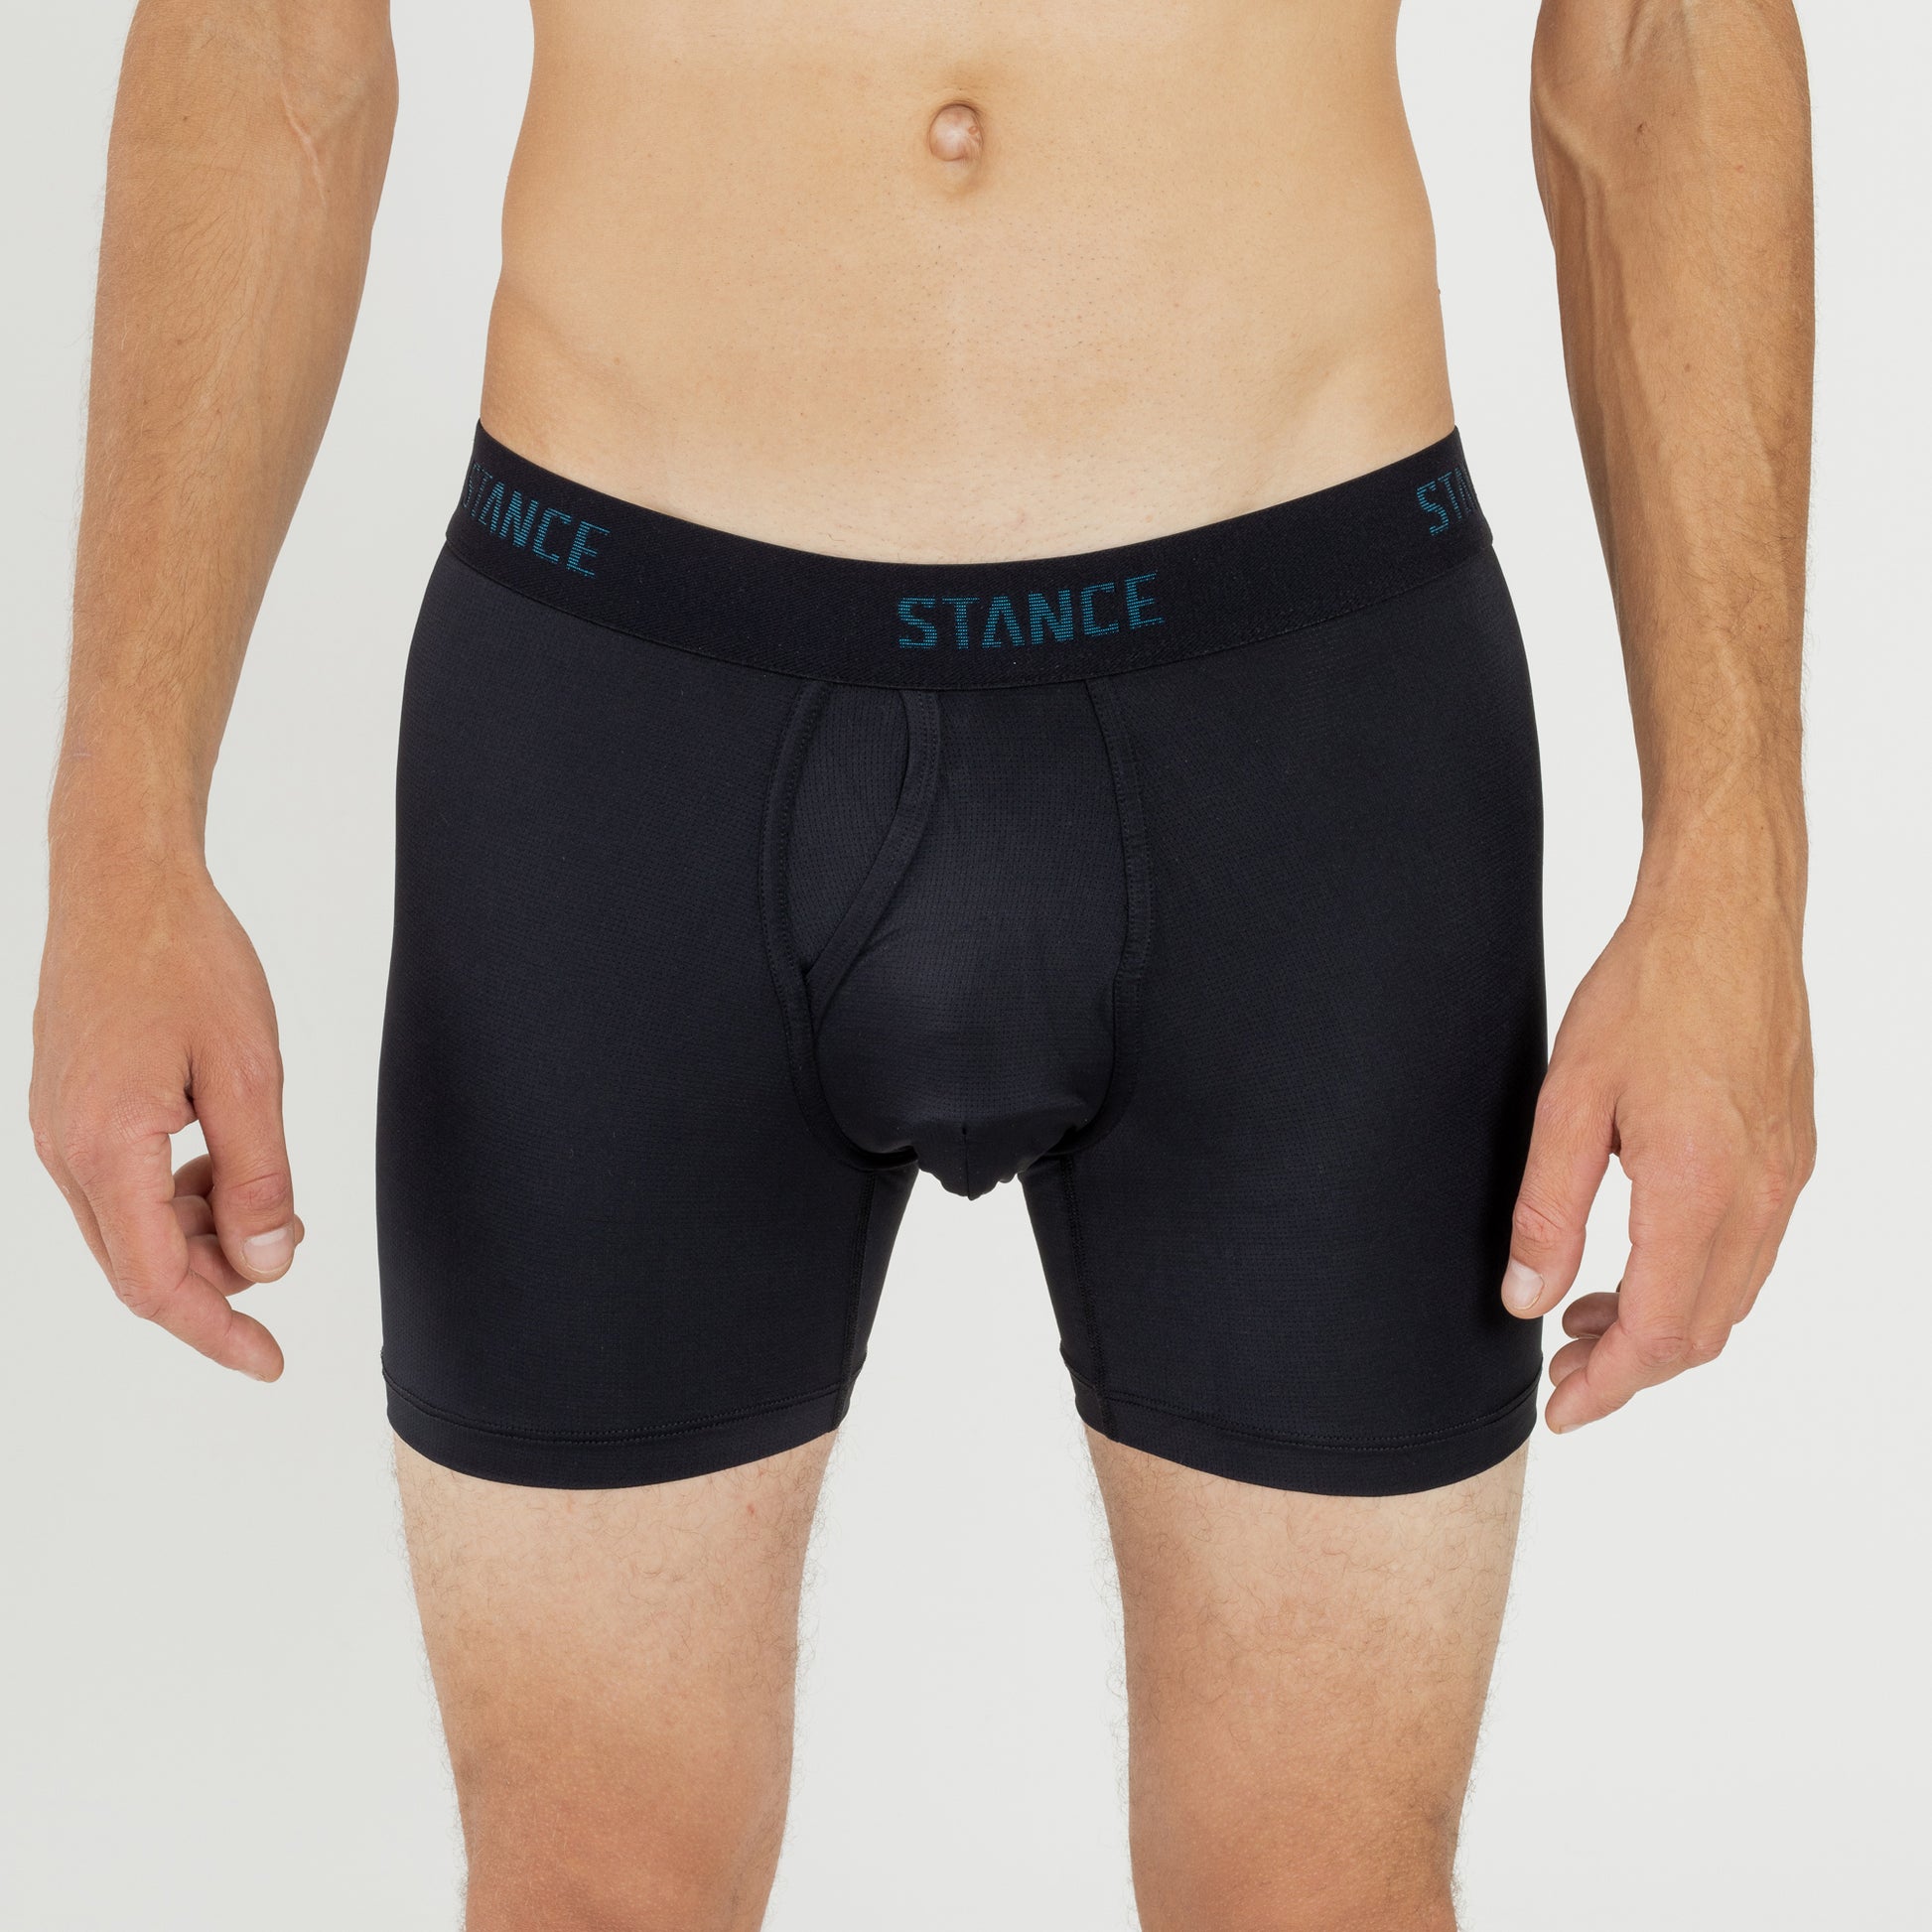 Stance Underwear Men's Wholester – Stance Europe